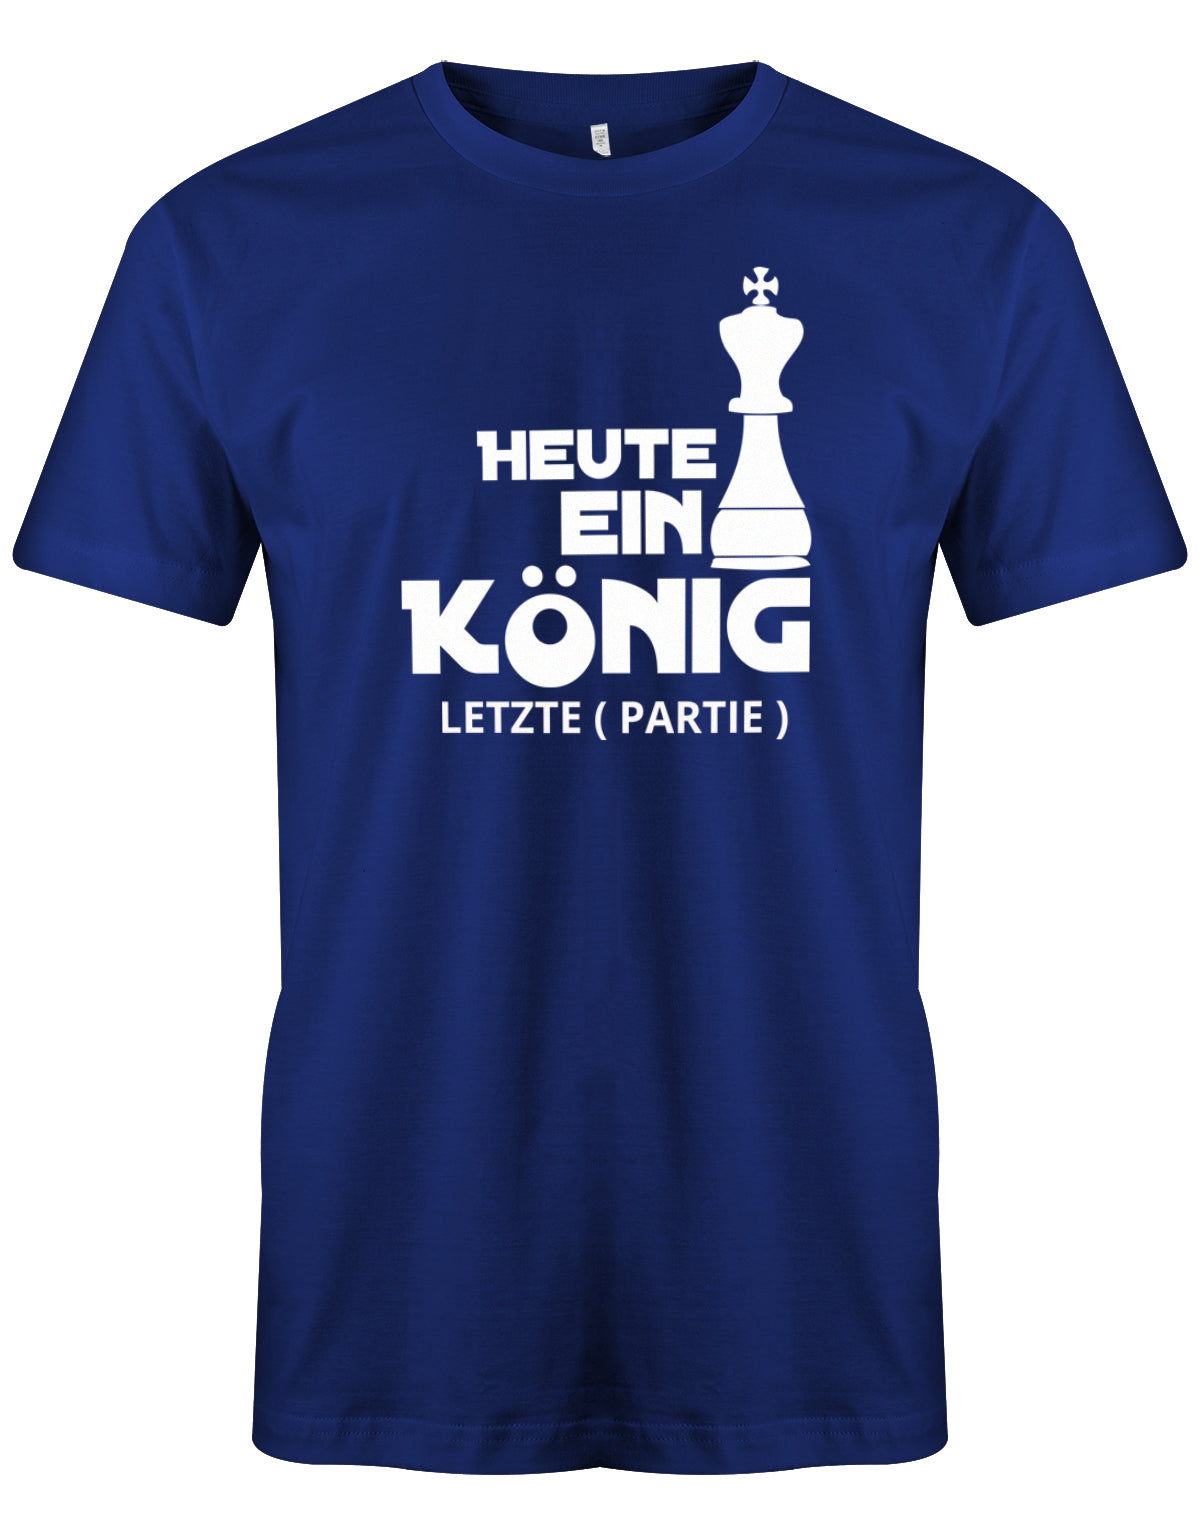 herren-shirt-royalblauOCOCHxgb9lqPA